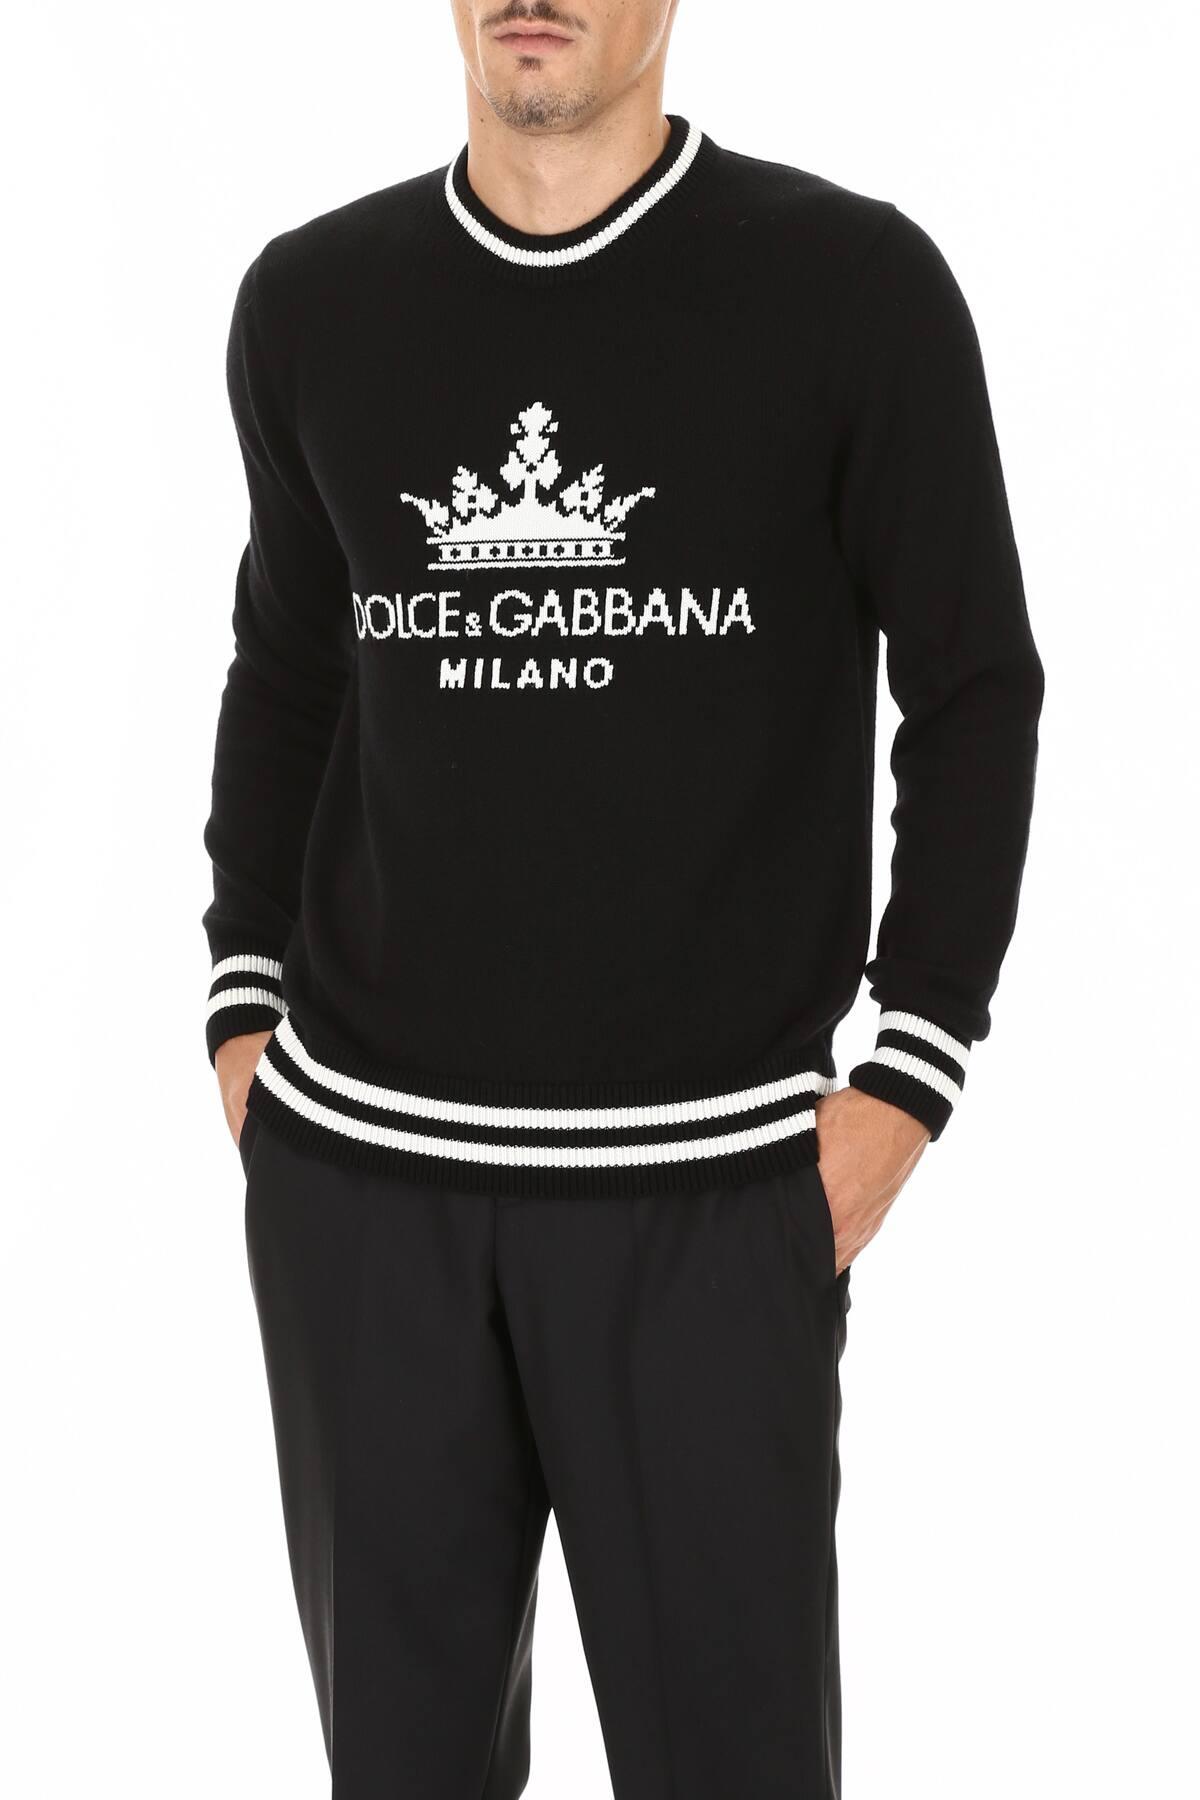 Dolce \u0026 Gabbana Dg Milano Pullover in 